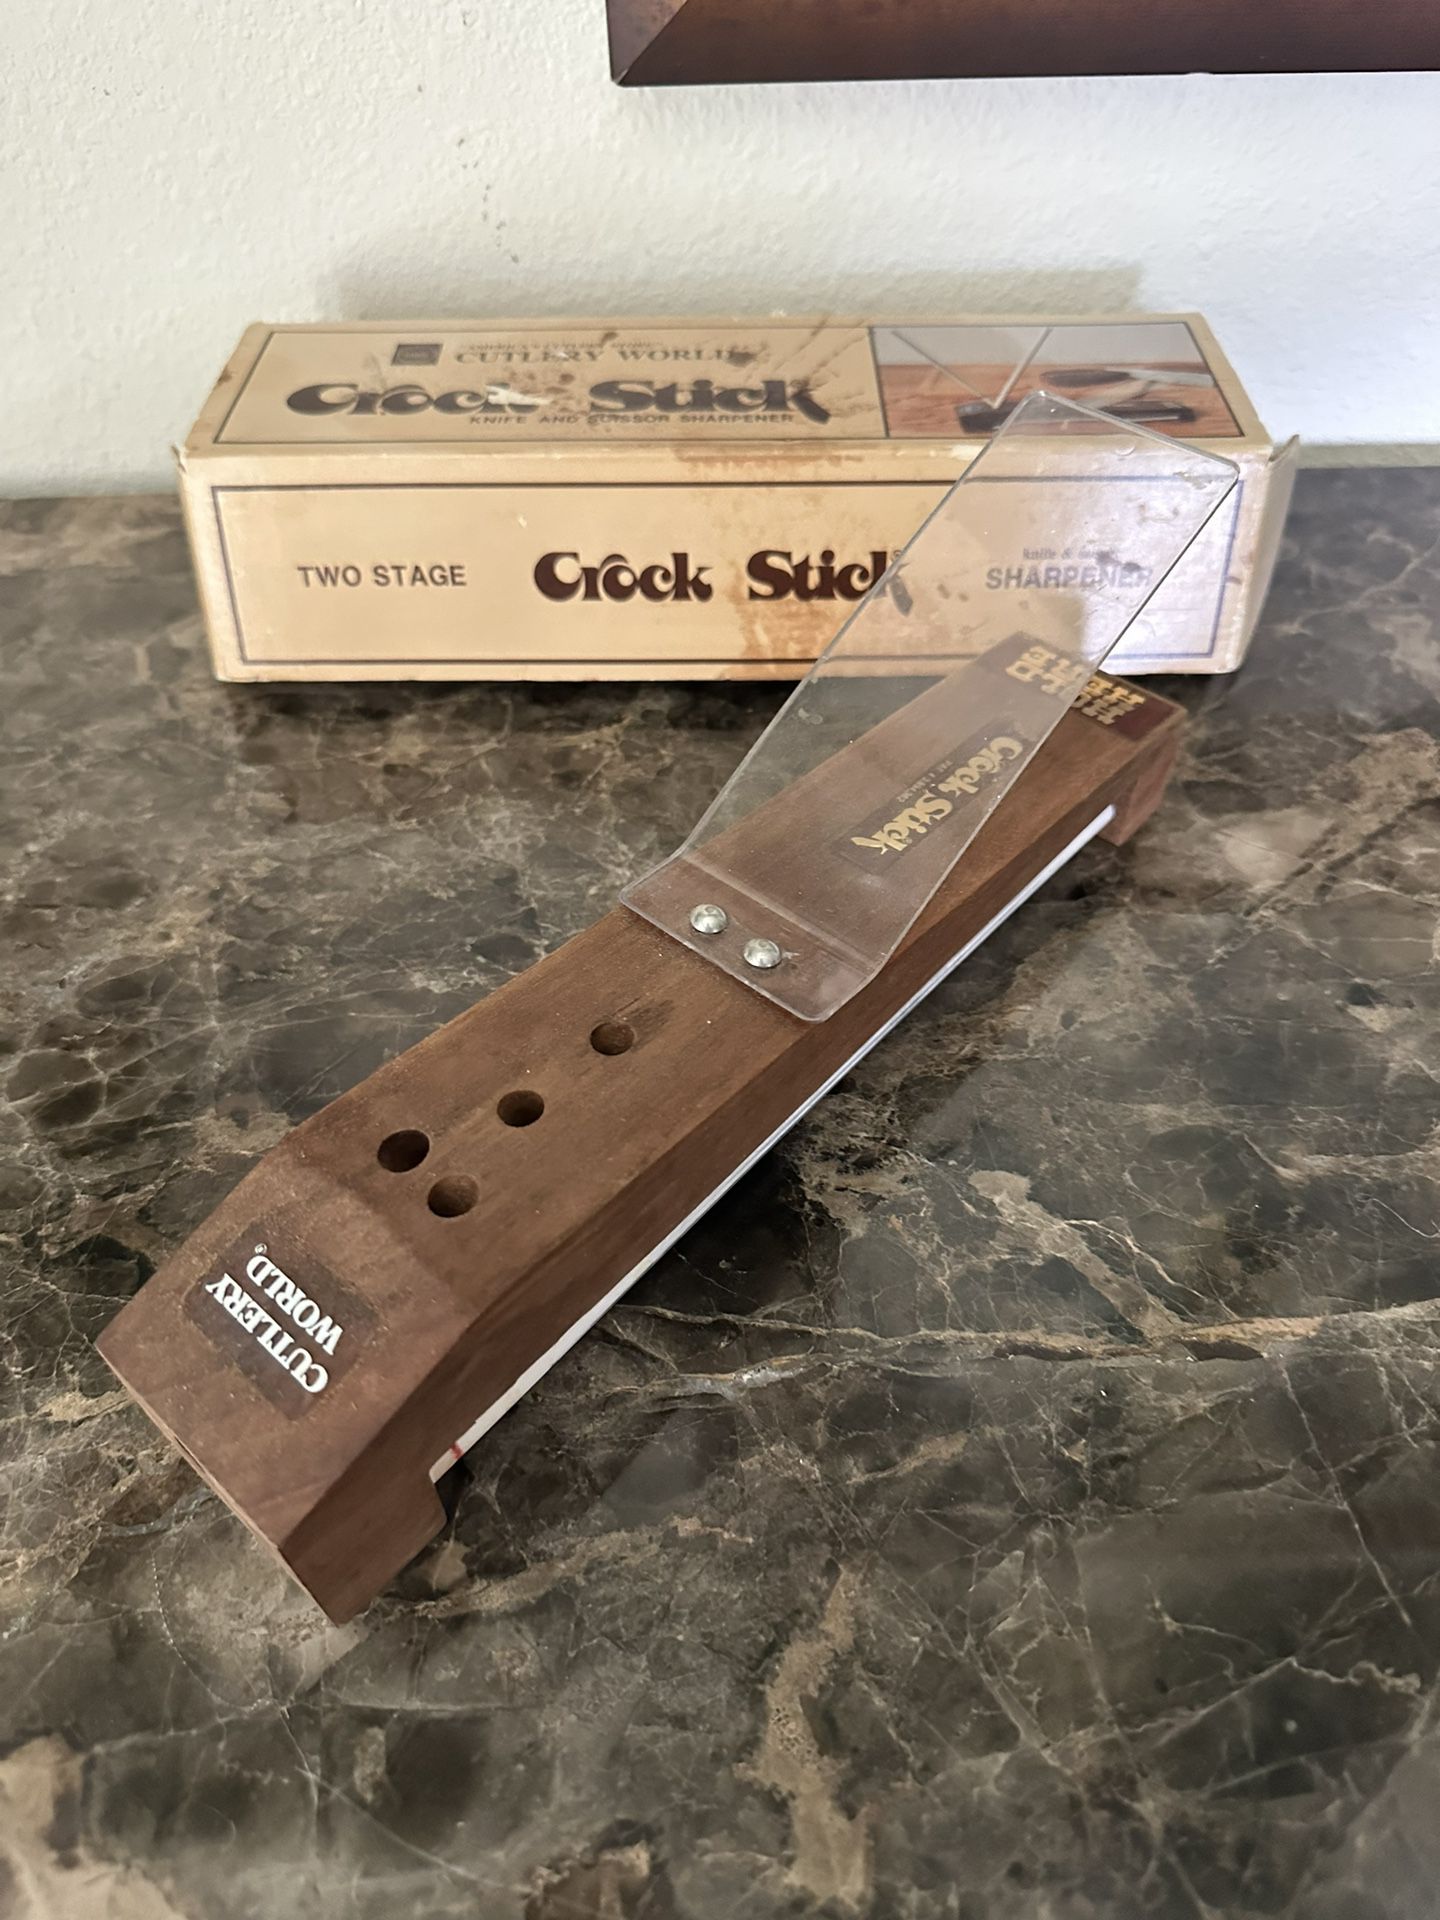 Vintage Crock Stick Knife Sharpener 2 Sticks and Wood Case